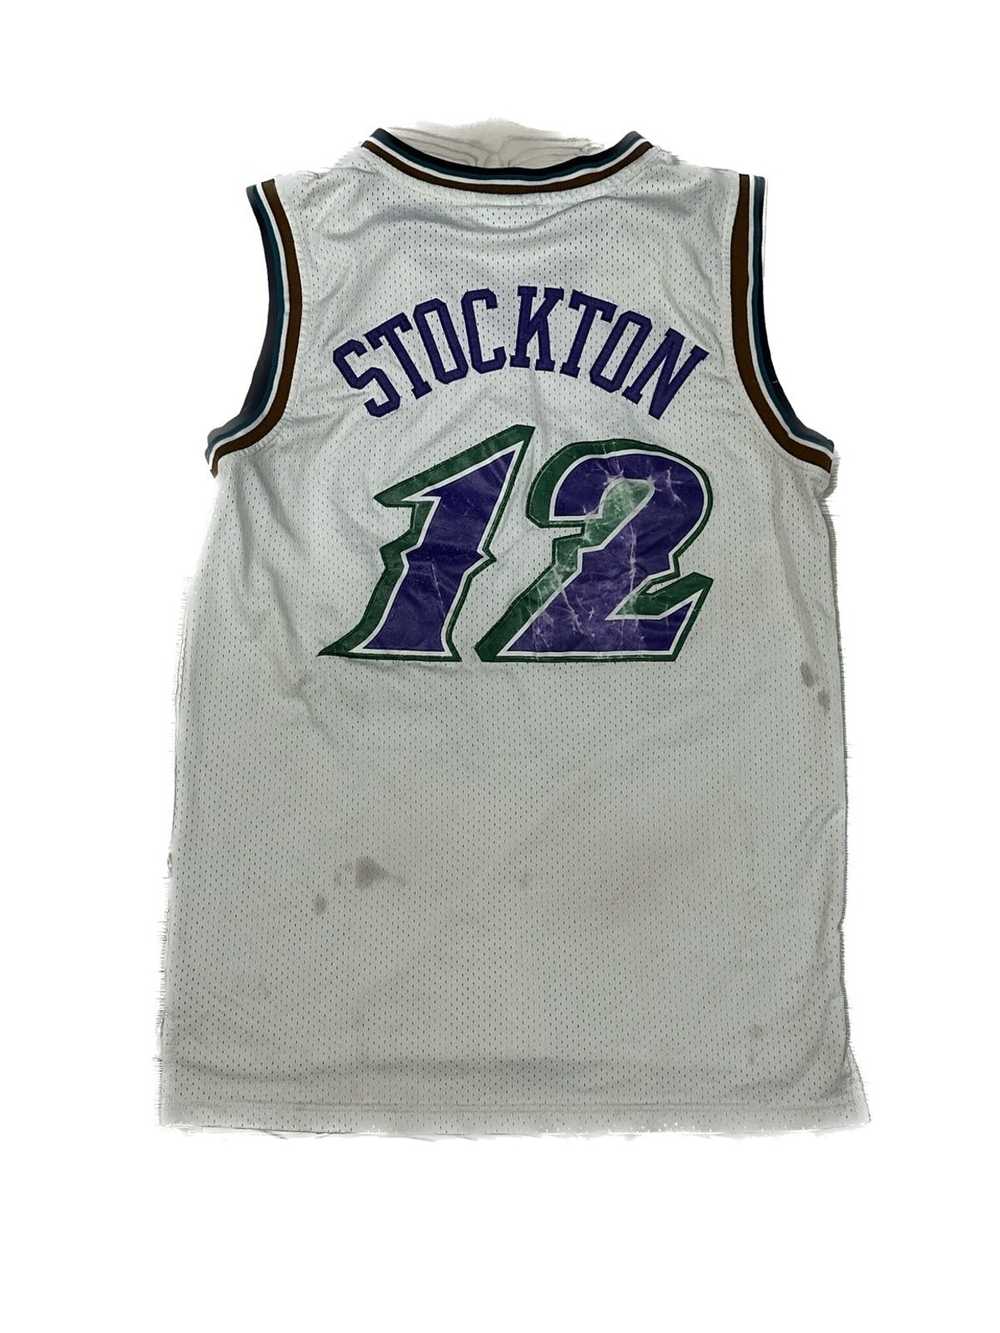 Adidas × NBA John Stockton Hardwood Classic Jersey - image 2